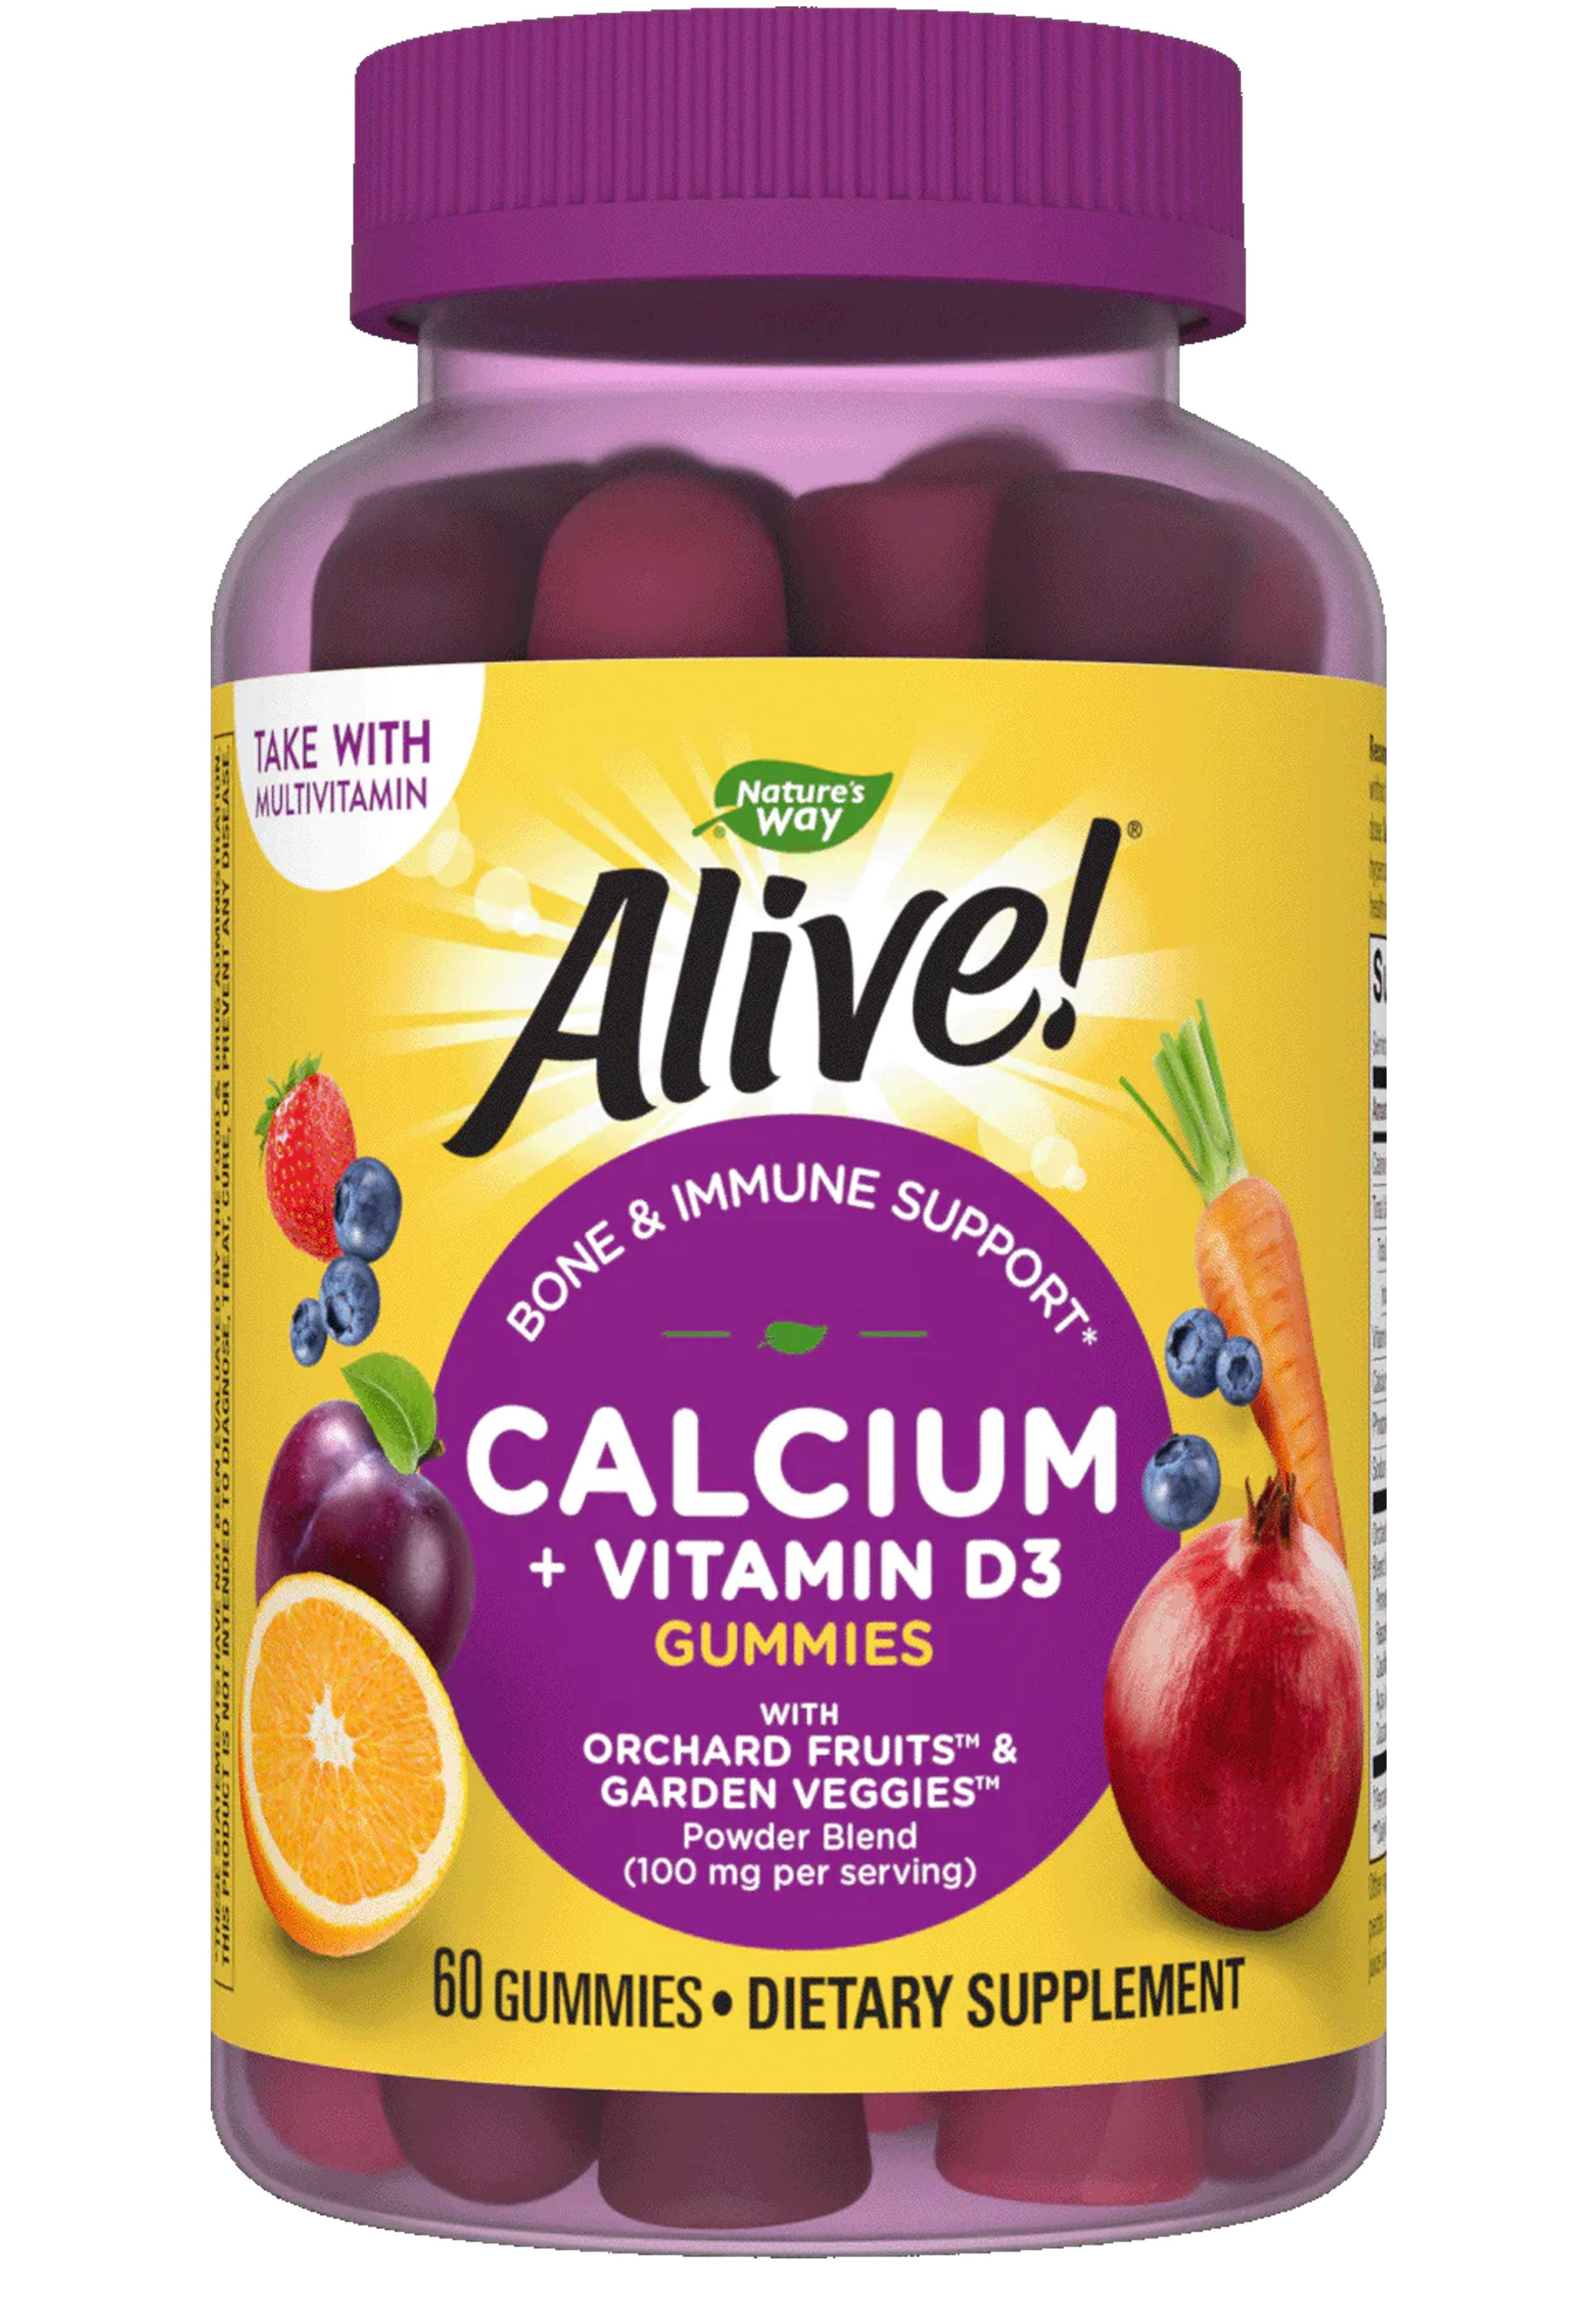 Nature's Way Alive! Calcium Plus Vitamin D3 Gummies Supplement - 60 Gummies